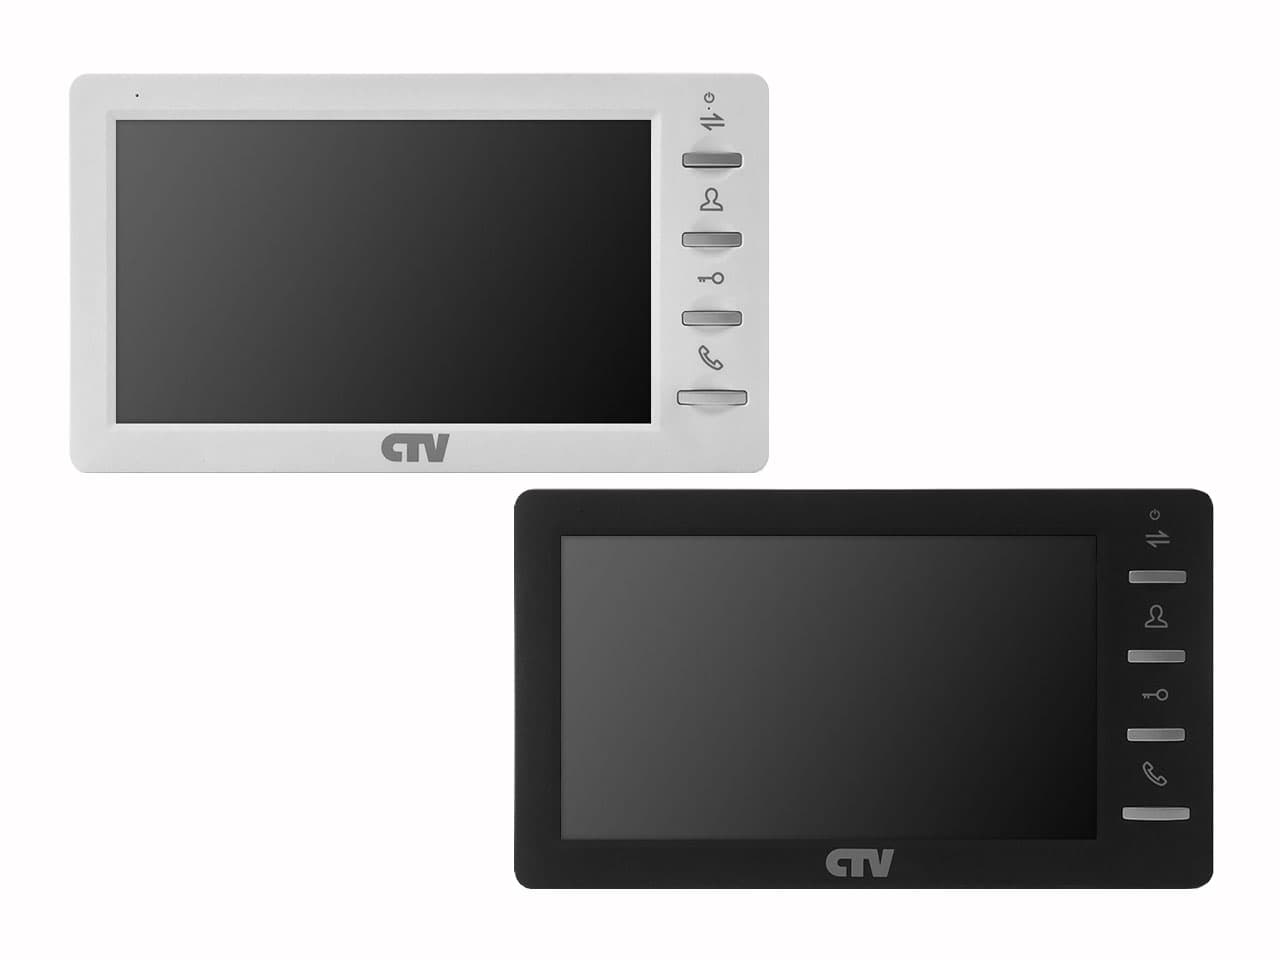 Цветной монитор CTV-M4700AHD получил обновленный дизайн